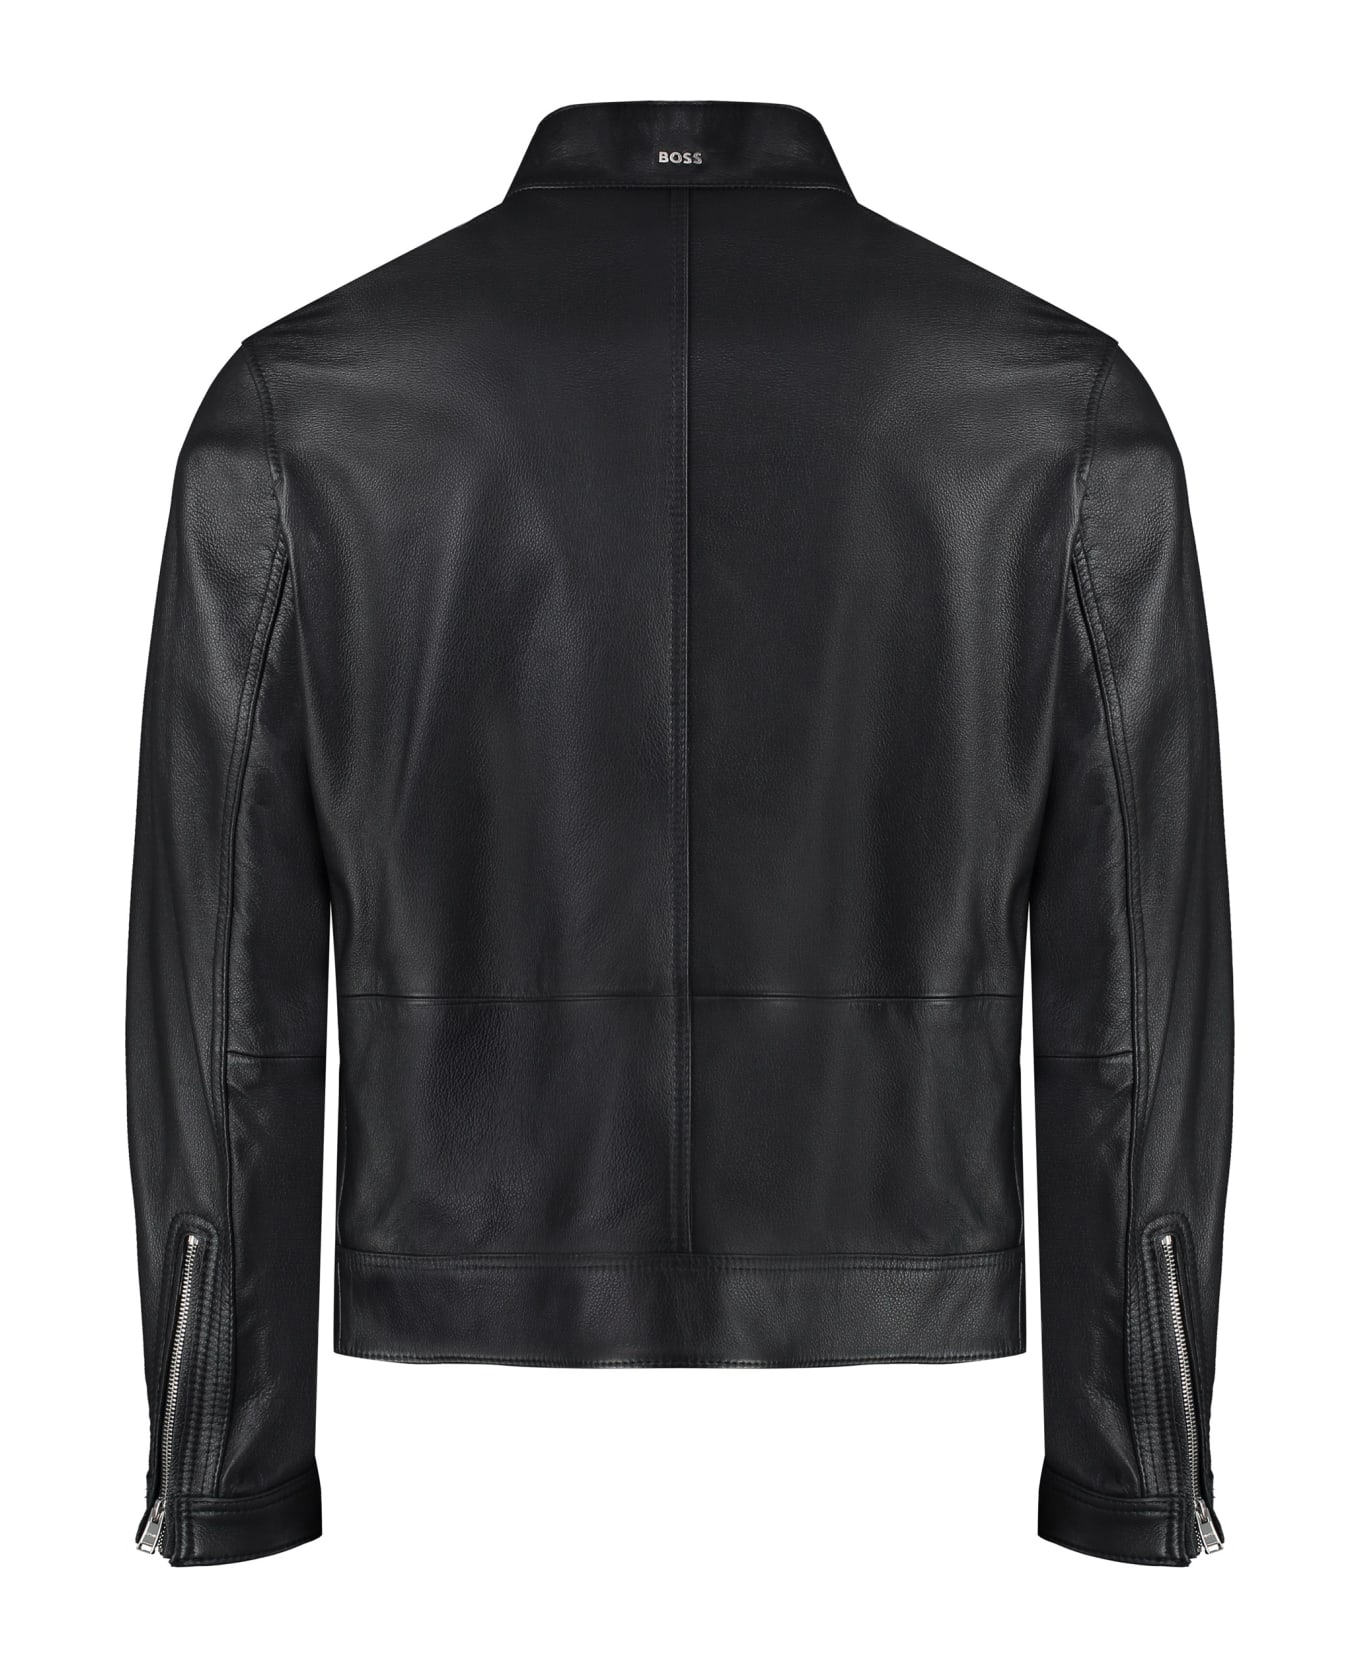 Hugo Boss Leather Jacket - Black